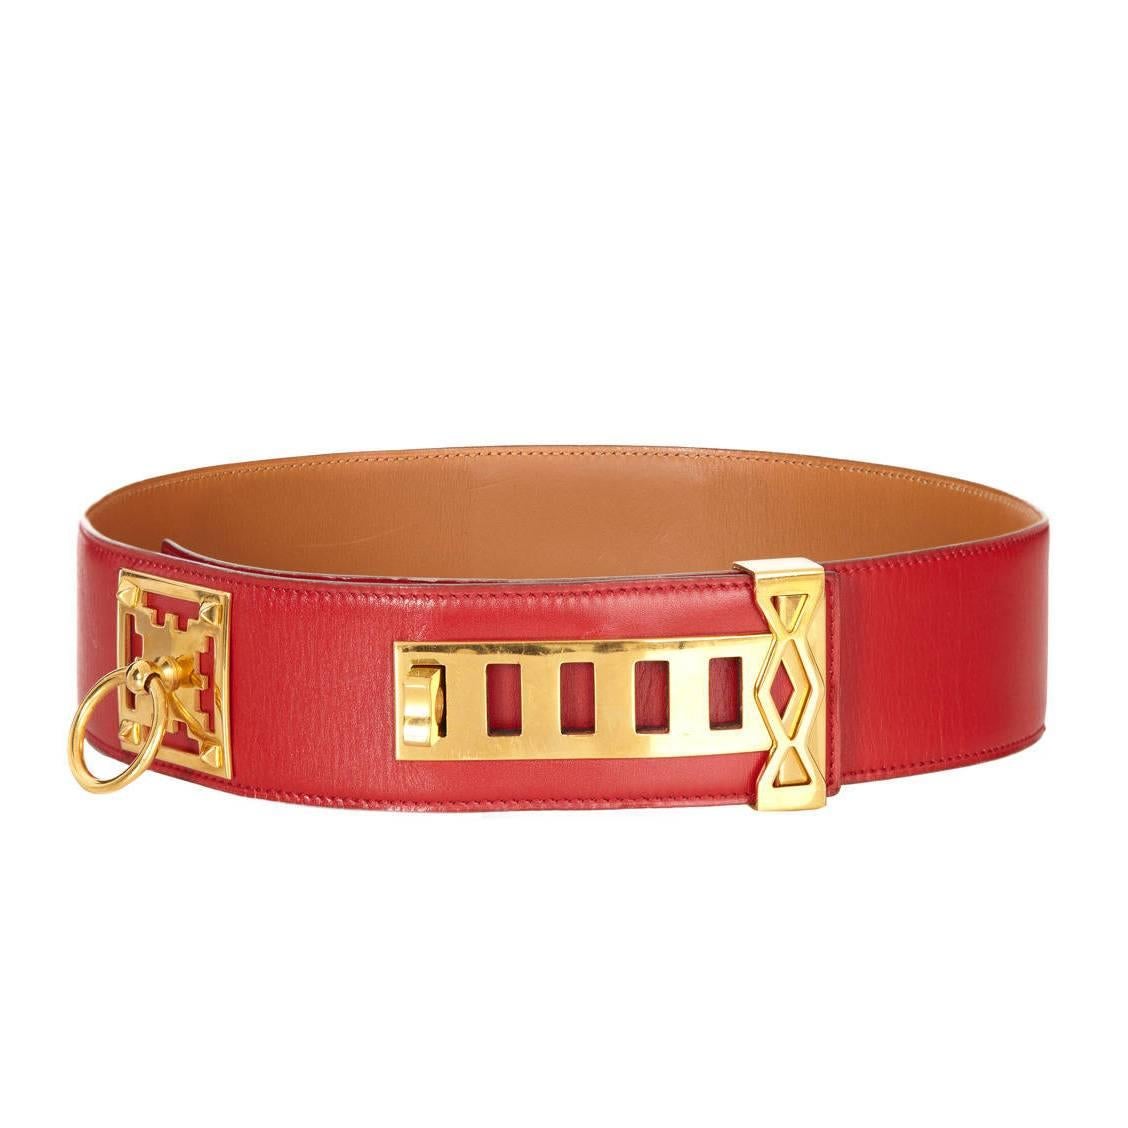 1980s Red Hermès Collier de Chien Leather Belt Size 70